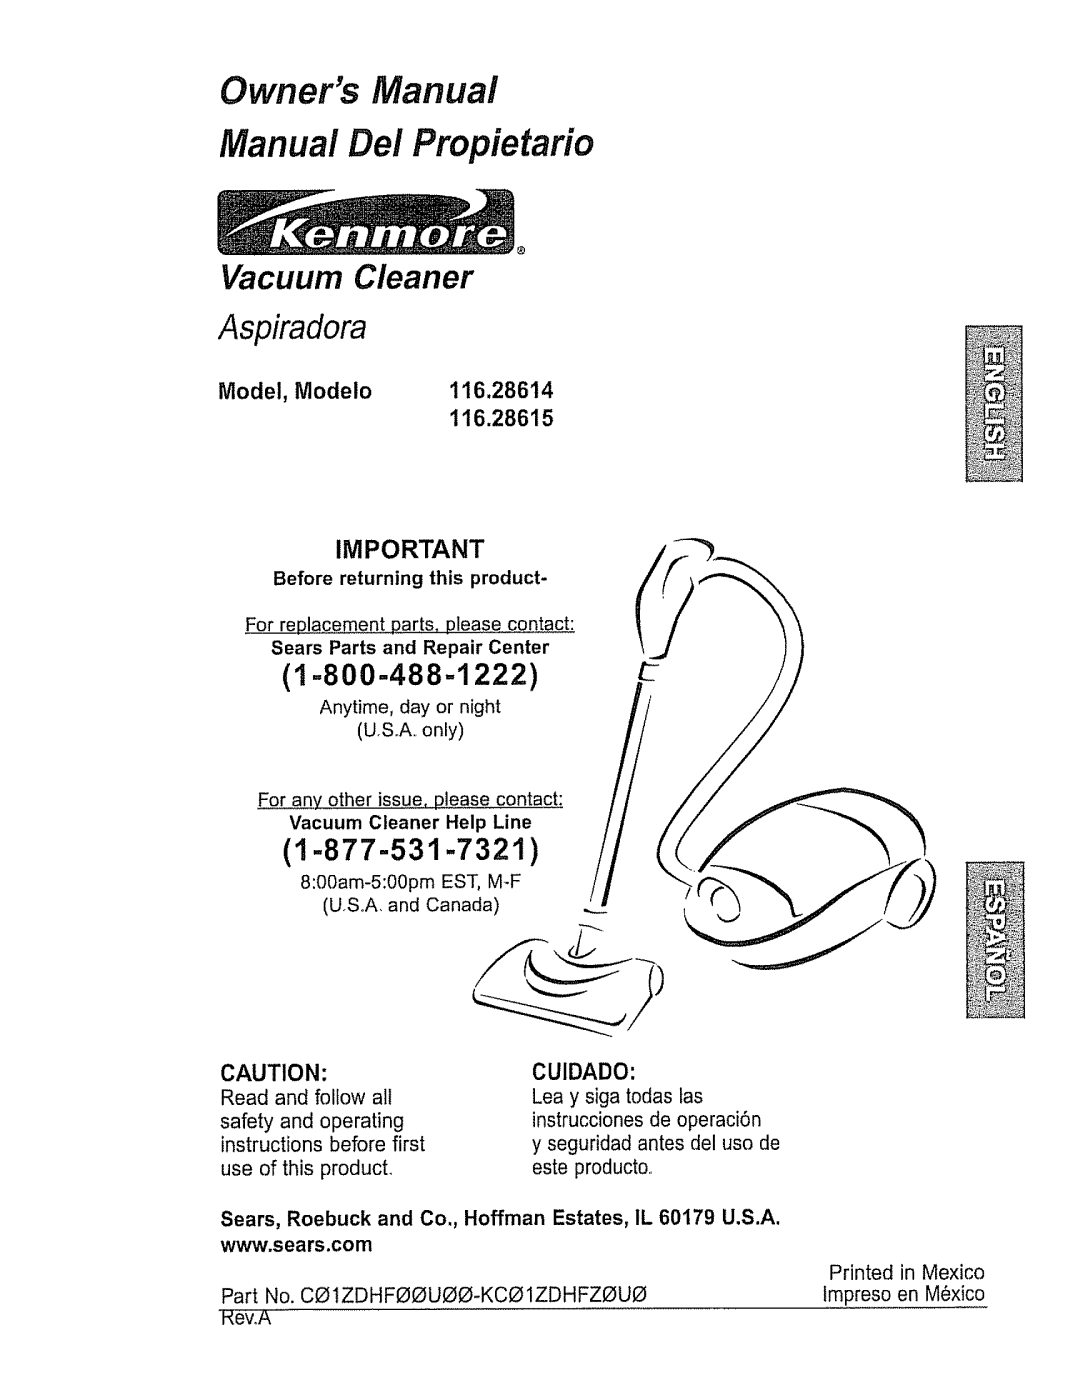 Kenmore 116.28615 owner manual 1-877-531-7321, 1=800-488=1222, Model, Modelo 116.28614, Aspiradora, Vacuum Cleaner 